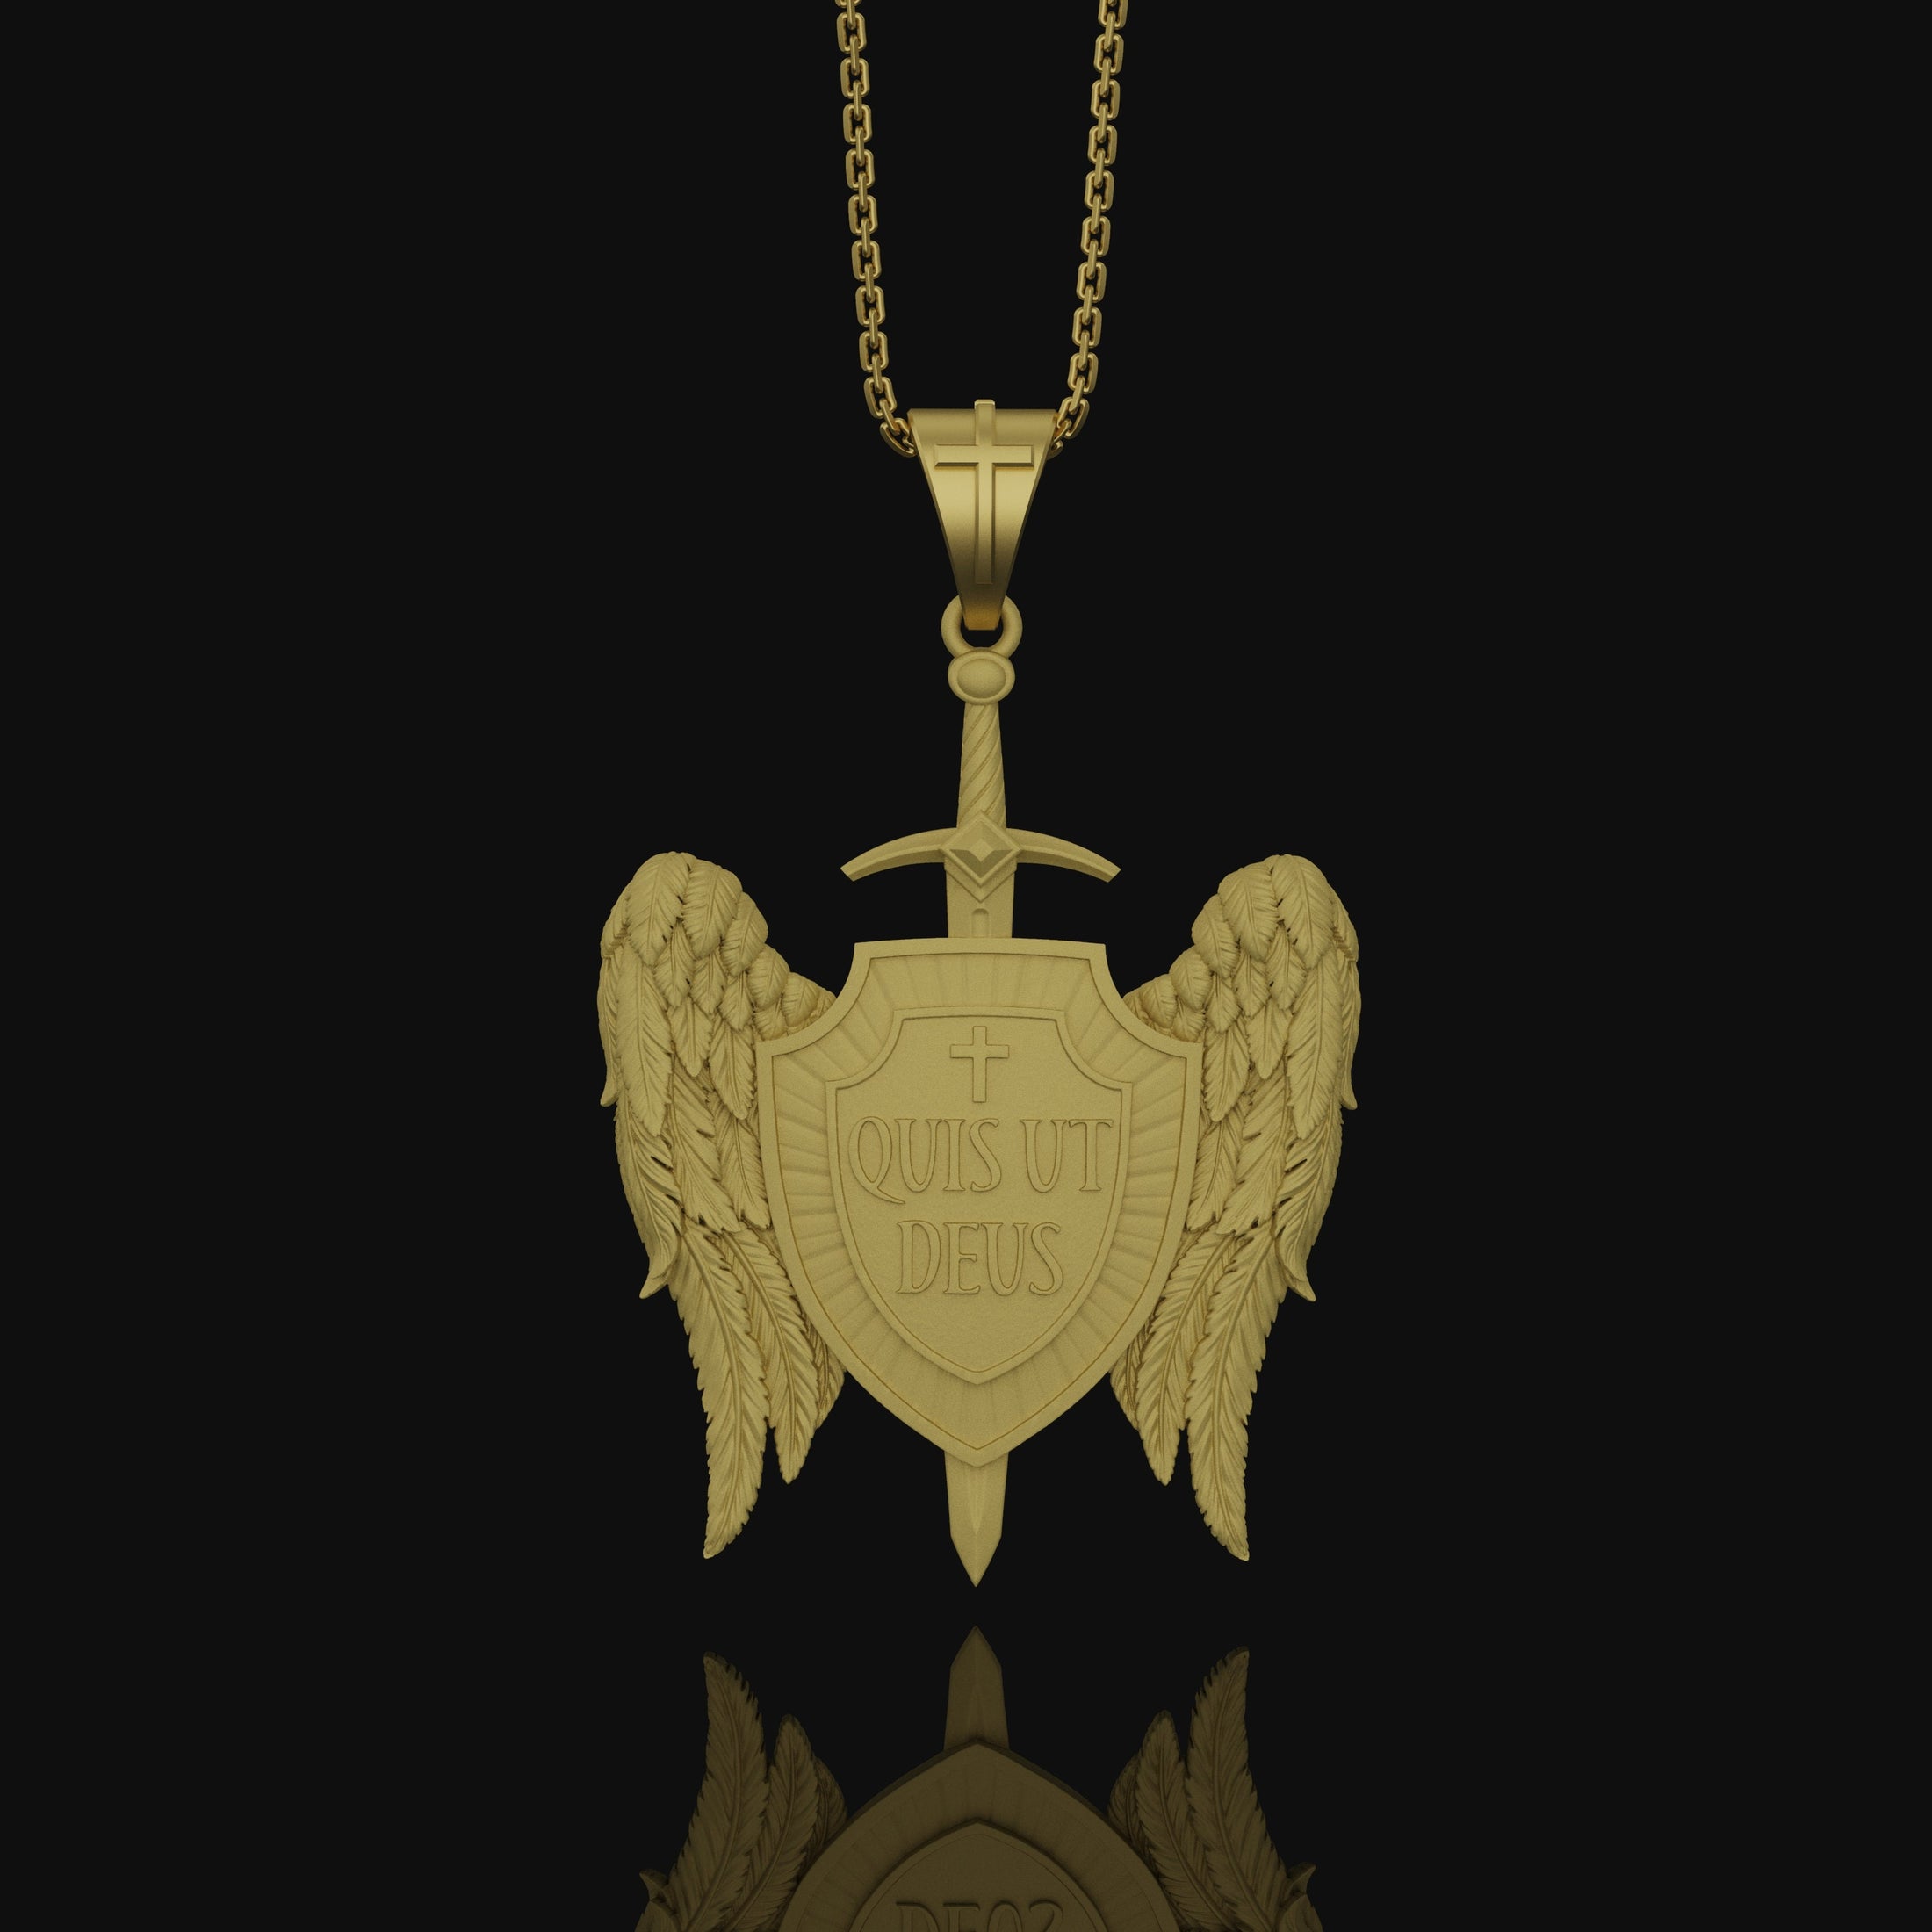 Gods Warrior Medal, Saint Michael, Spiritual Protection from Satan Medallion, St Michael Pendant, Quis Ut Deus, St Michael Archangel Gold Matte